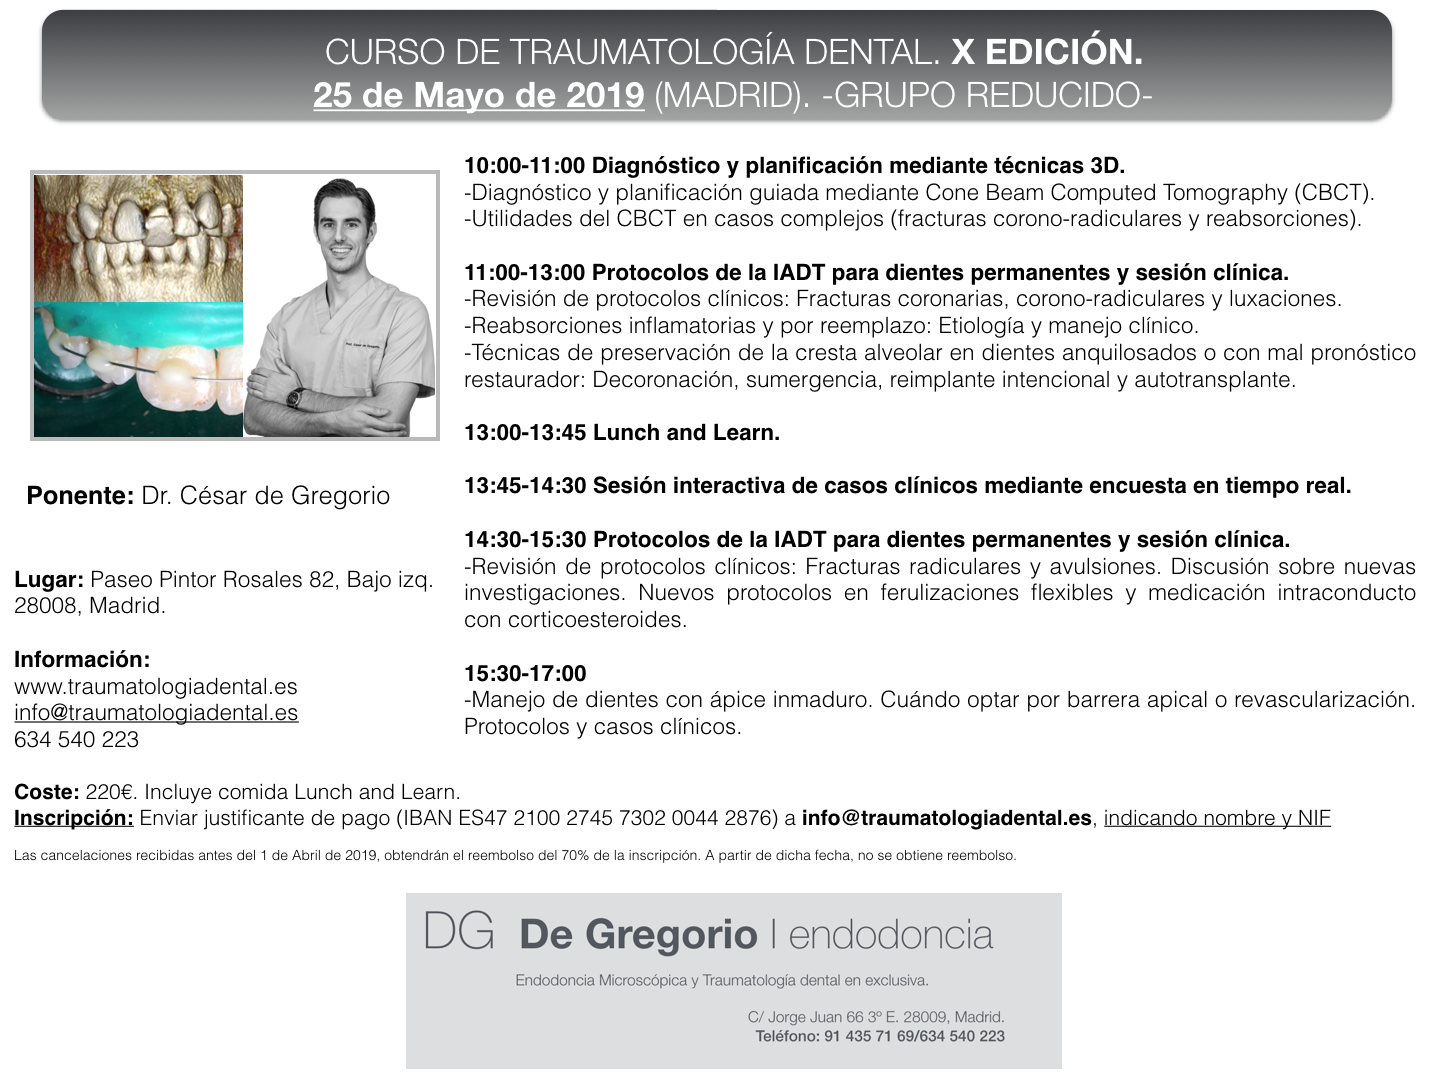 Traumatologia Dental X edicion